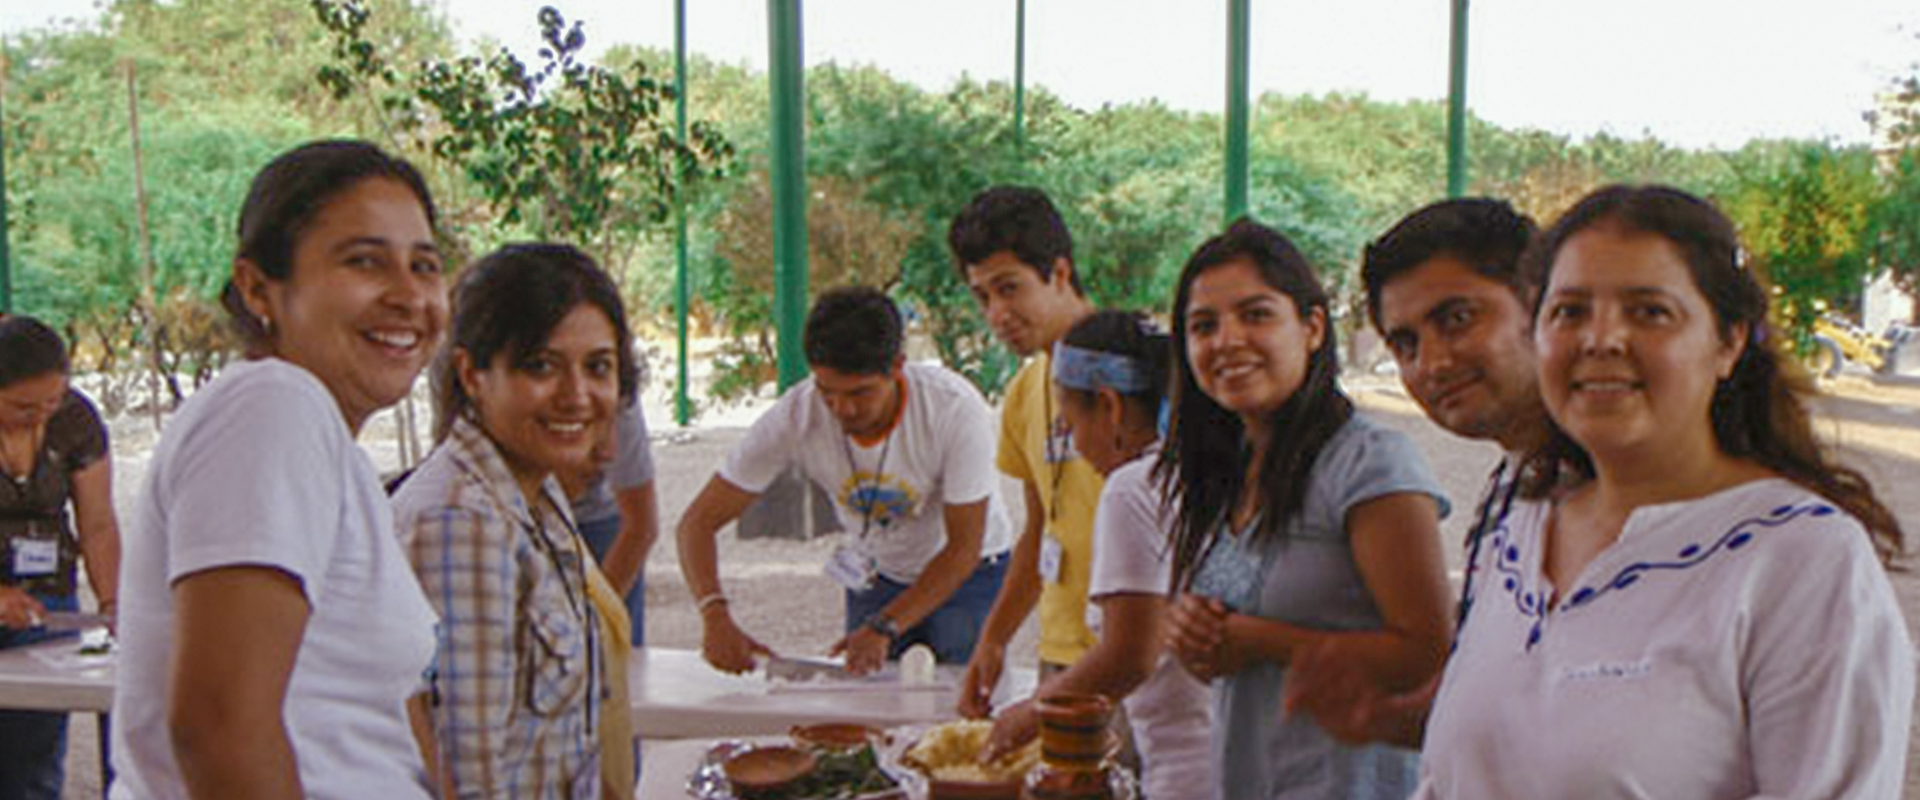 Curso de Nutricion y Cocina con Amaranto Museo del Agua, San Gabriel Chilac